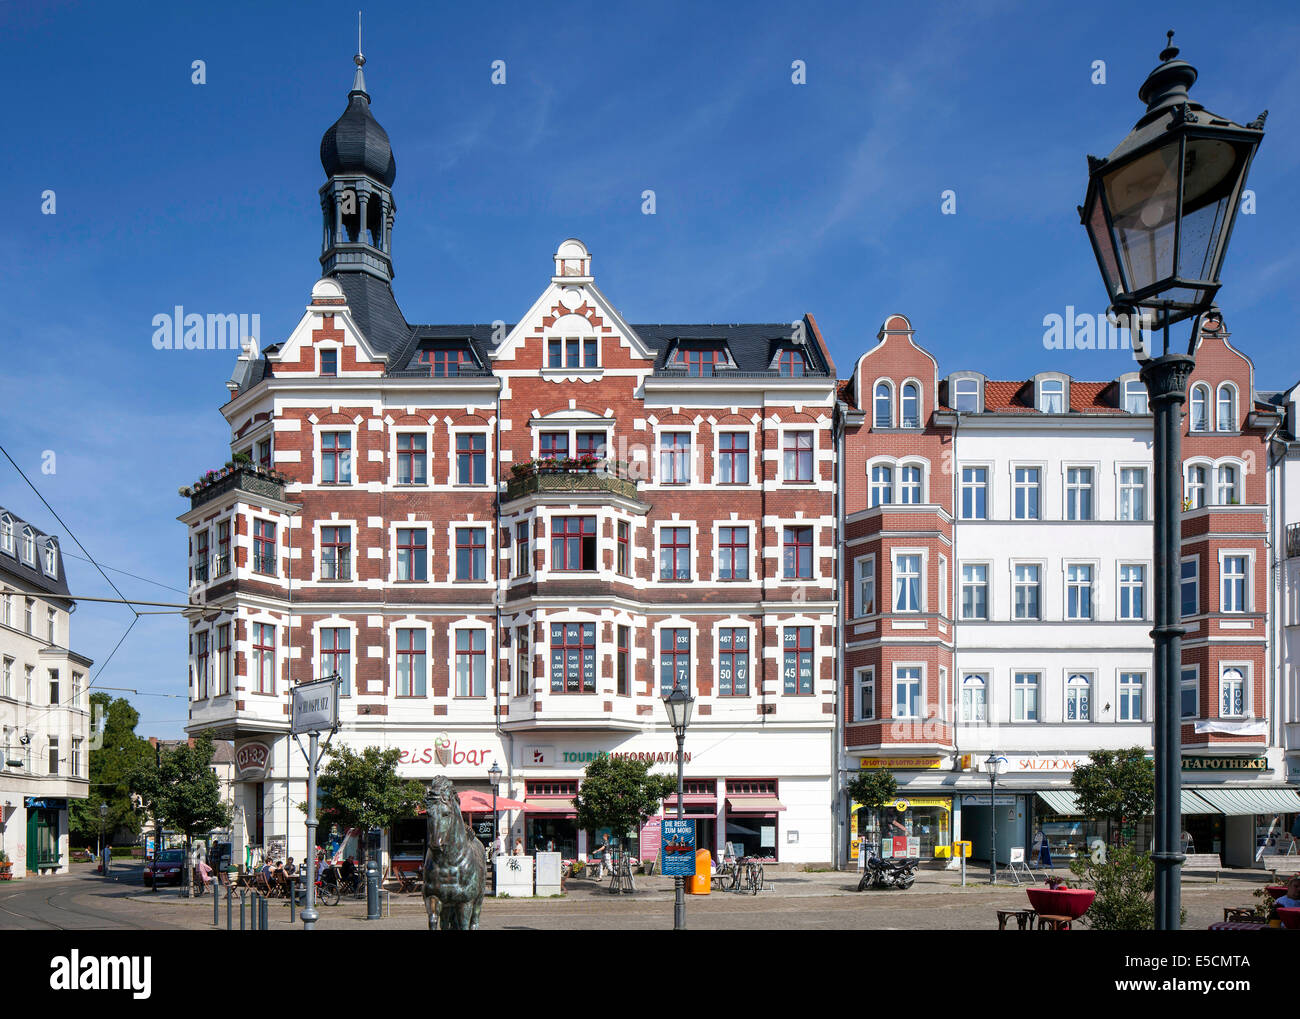 Les immeubles de bureaux et commerciaux historiques sur place Schlossplatz, centre historique, Köpenick, Berlin, Allemagne Banque D'Images